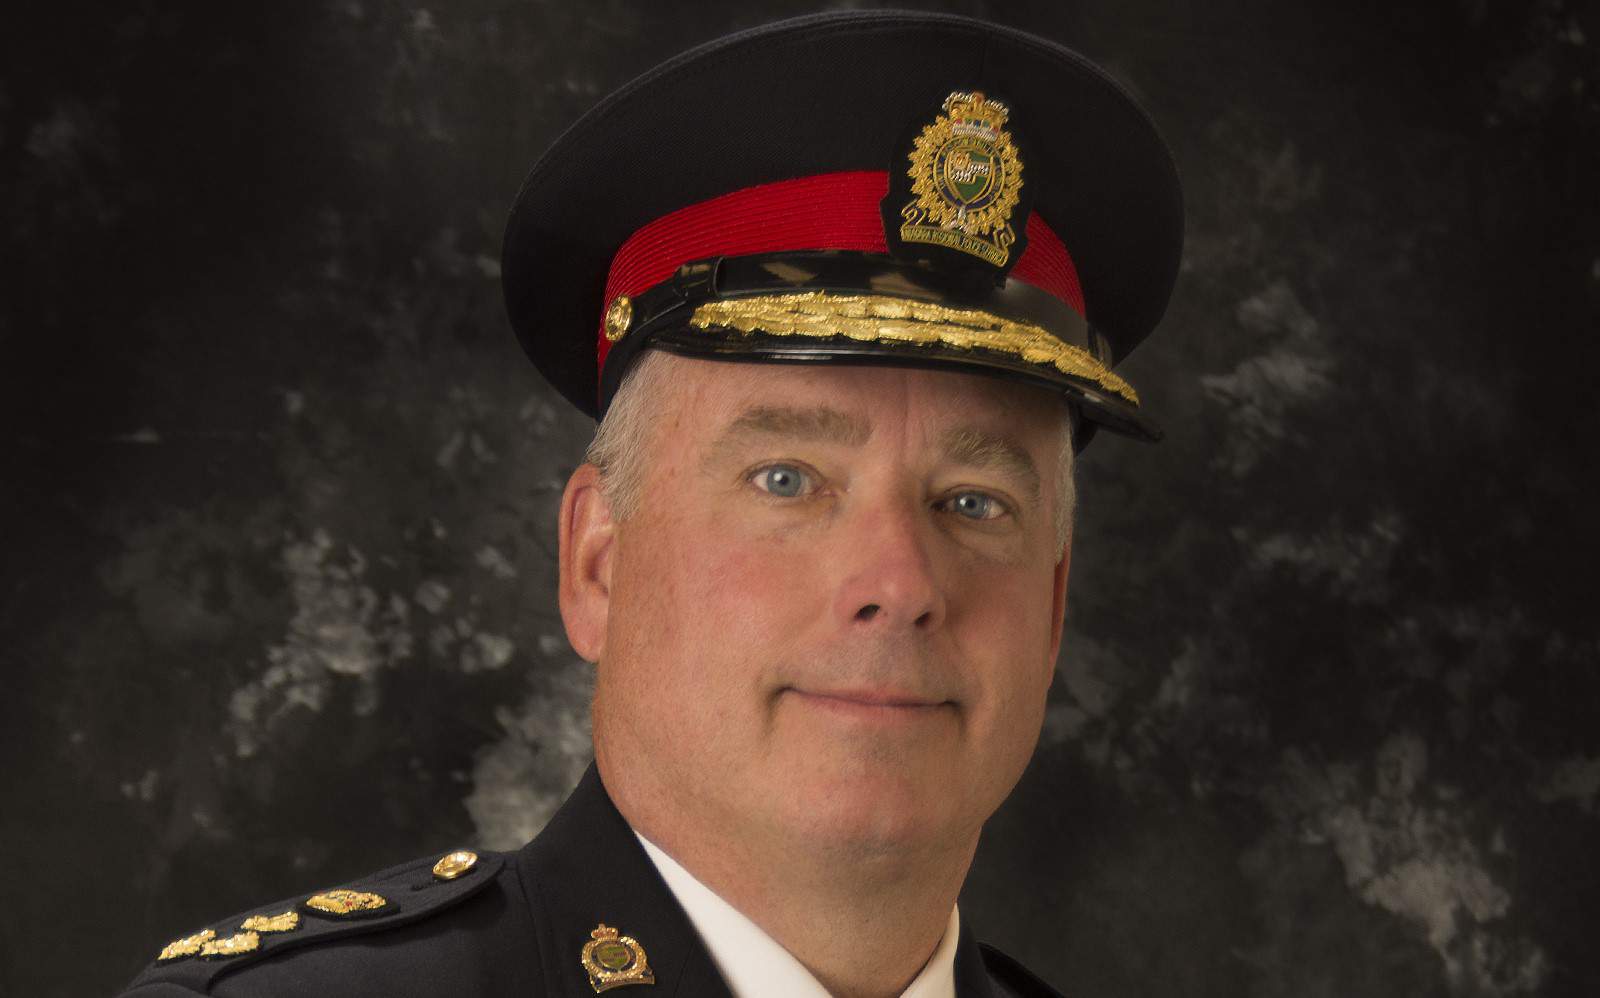 Niagara Police Chief Bryan MacCulloch